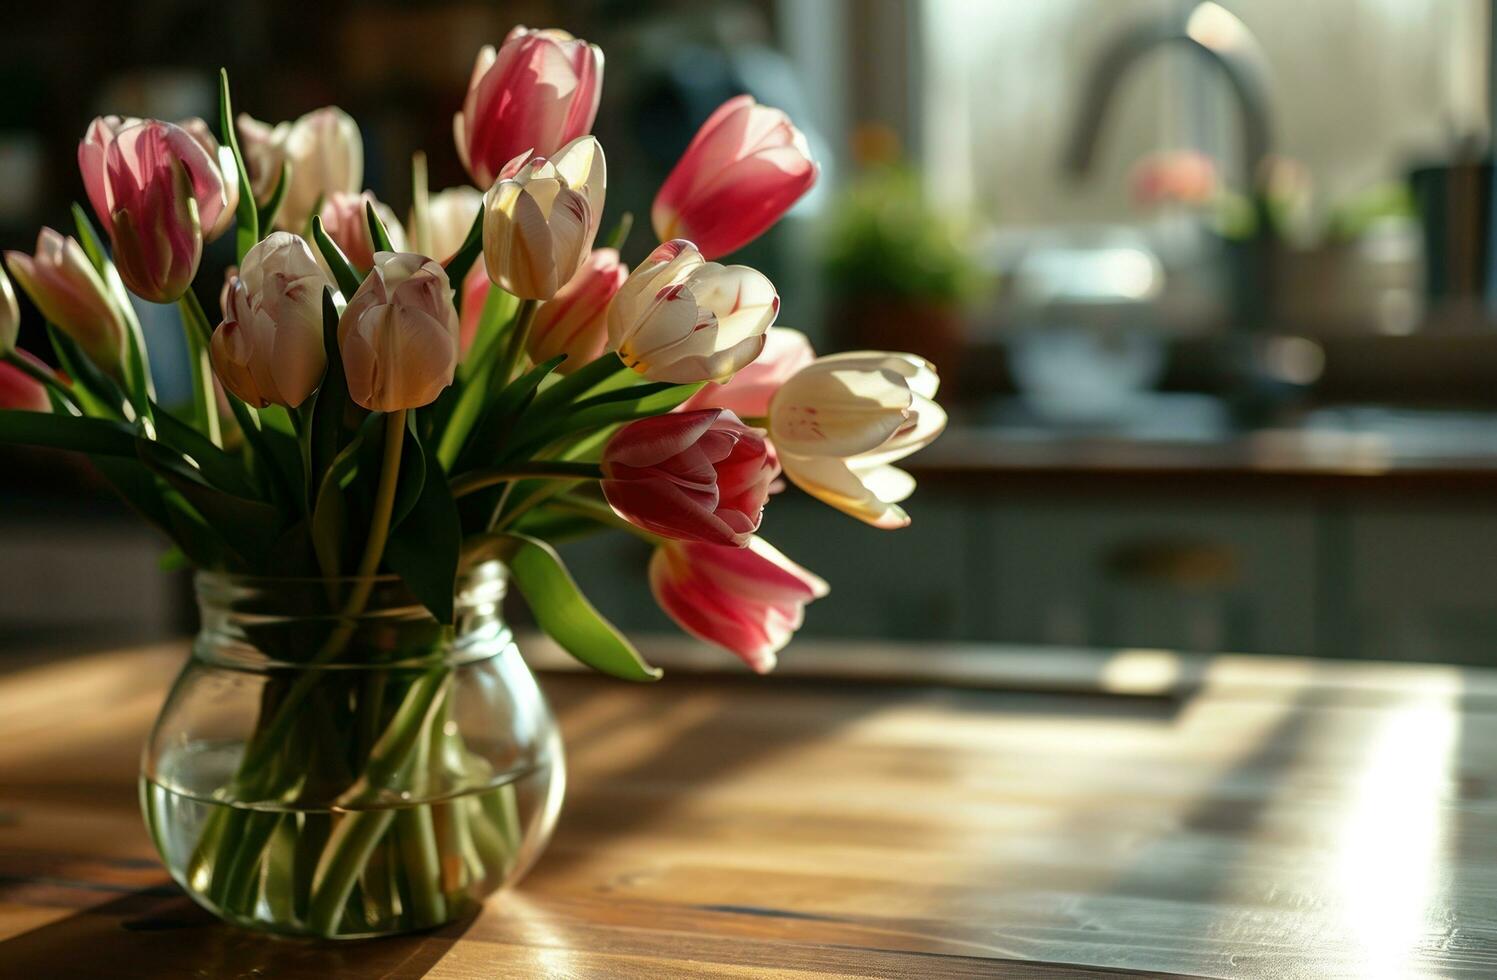 ai gerado tulipas Como peça central em cozinha mesa foto